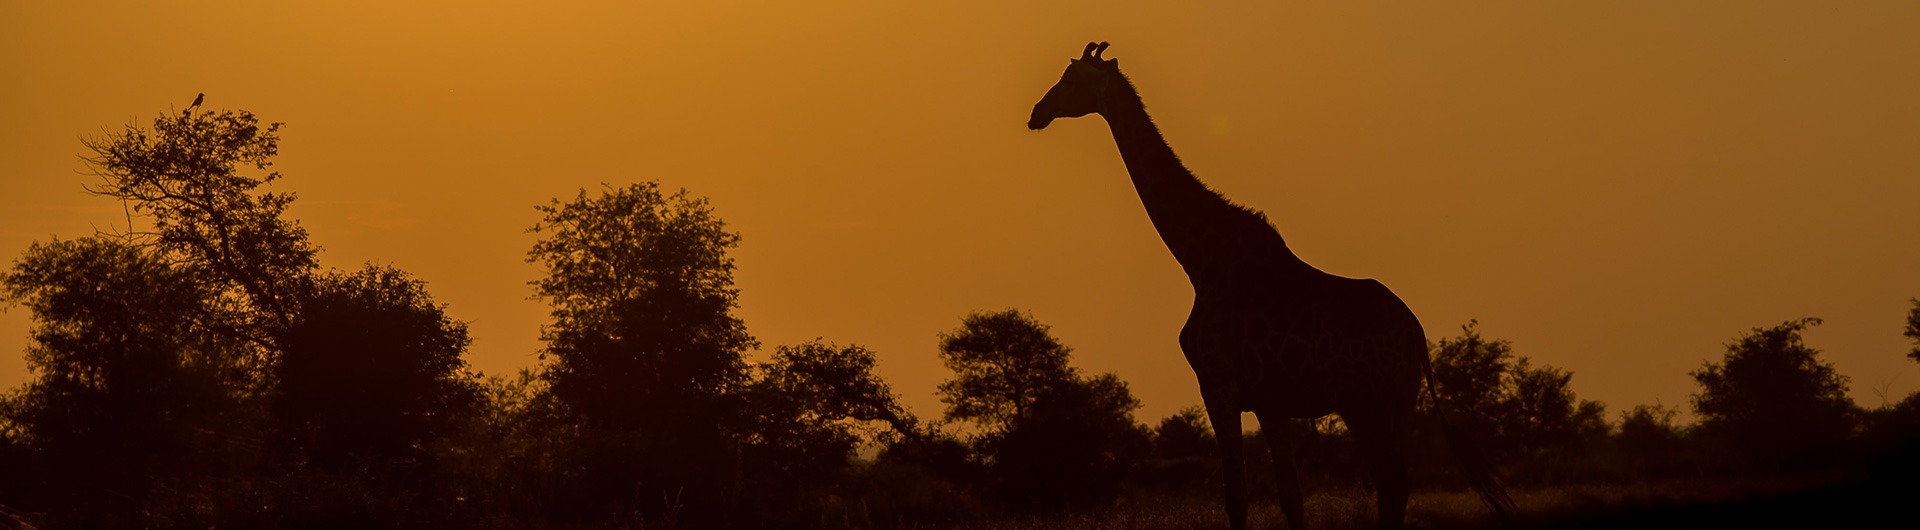 Giraffe at Kruger National Park in Kenya